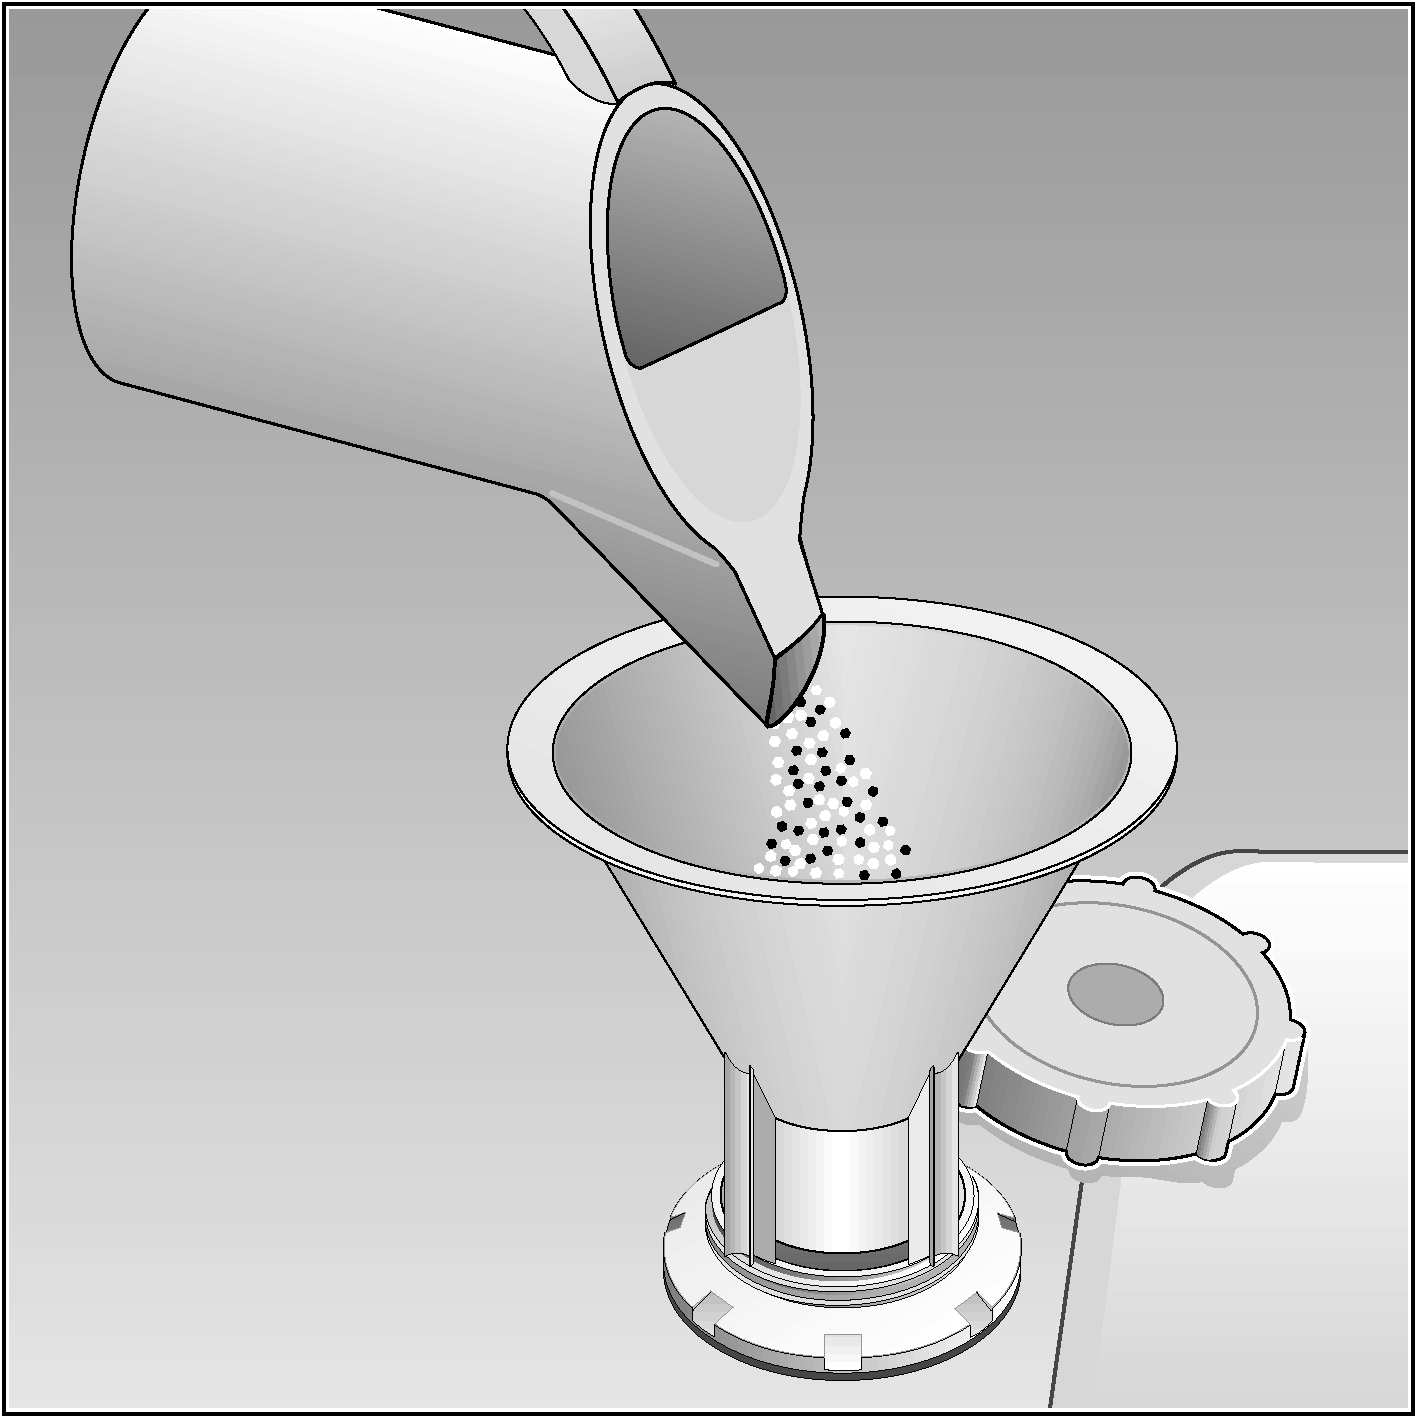 Spezialsalz einfüllen Wirkungsweise des Salzes Während des Spülens wird automatisch das Salz aus dem Salzbehälter in den Enthärter geschwemmt und löst dort den Kalk.